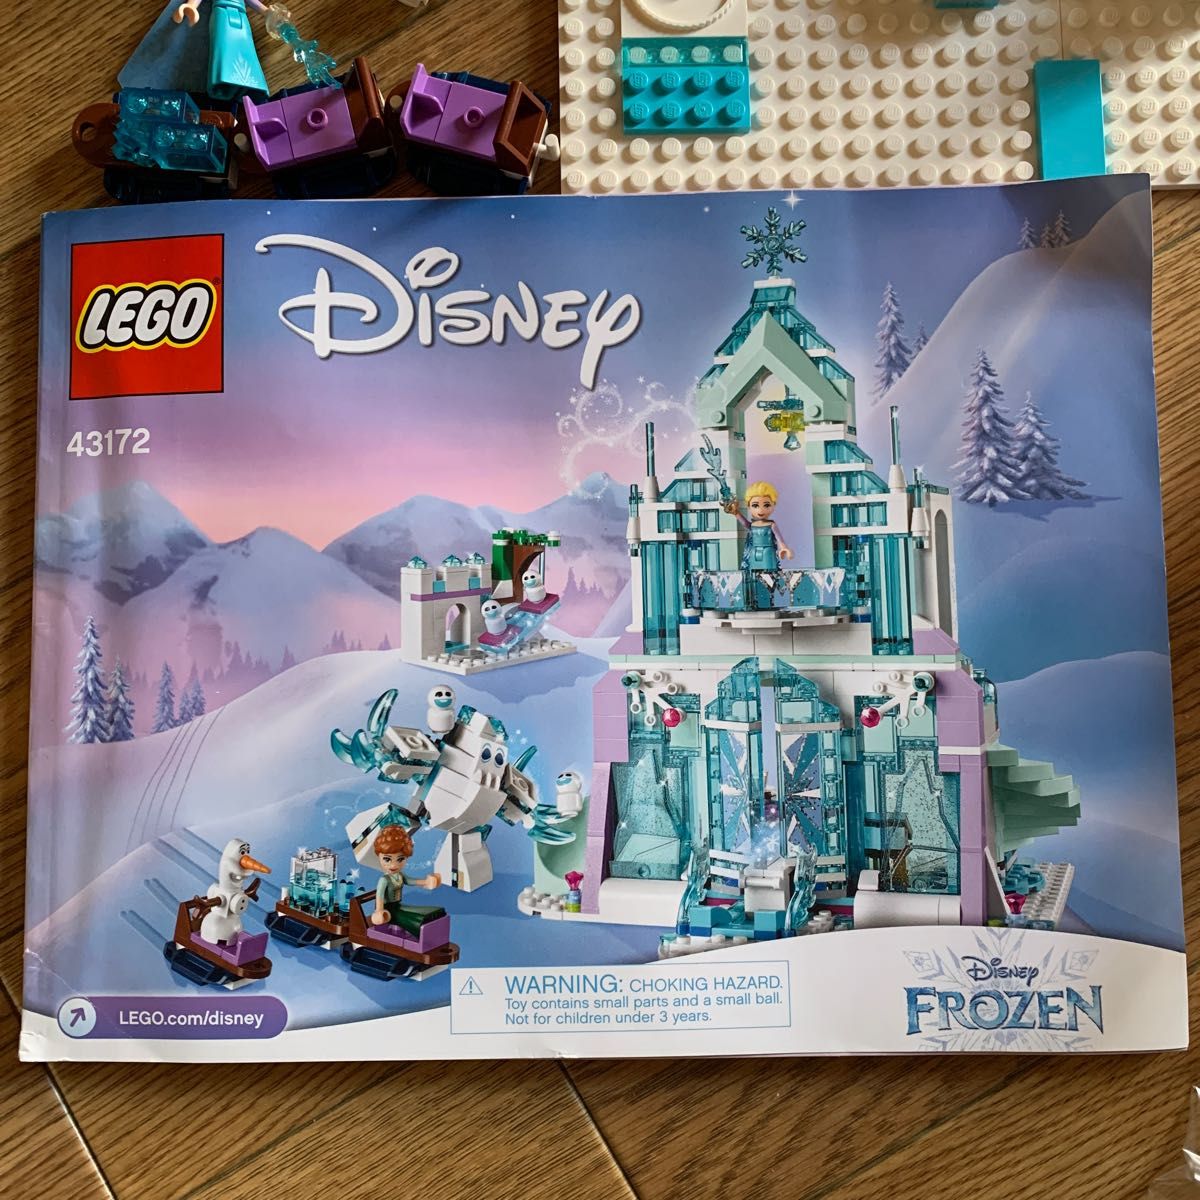 レゴ(LEGO) ディズニープリンセス アナと雪の女王 “アイスキャッスル